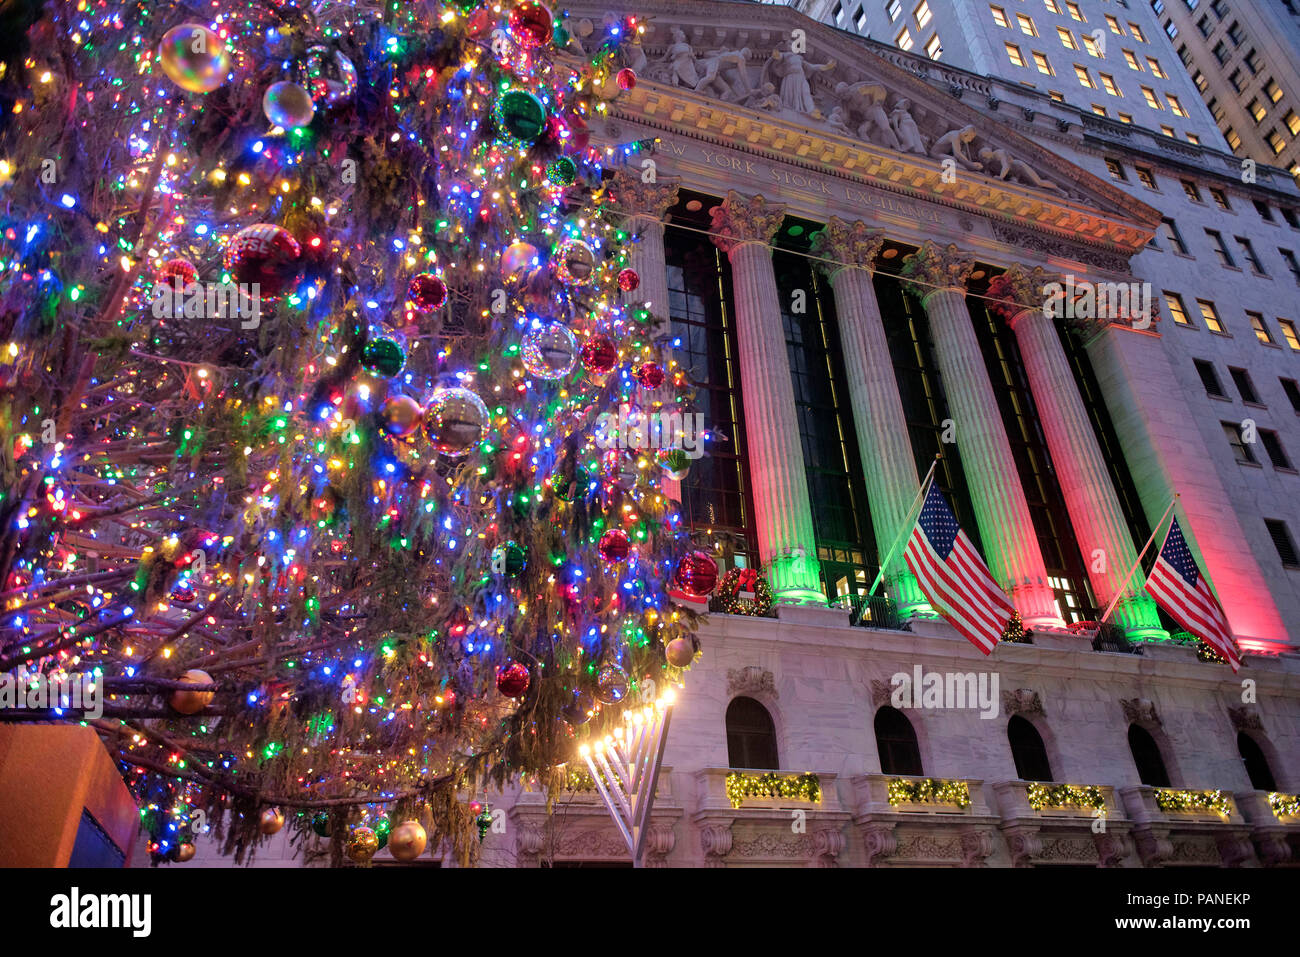 Die Börse in der Wall Street an Weihnachten, Manhattan, New York City, USA, 30. Dezember 2017 Foto © Fabio Mazzarella/Sintesi/Ala Stockfoto